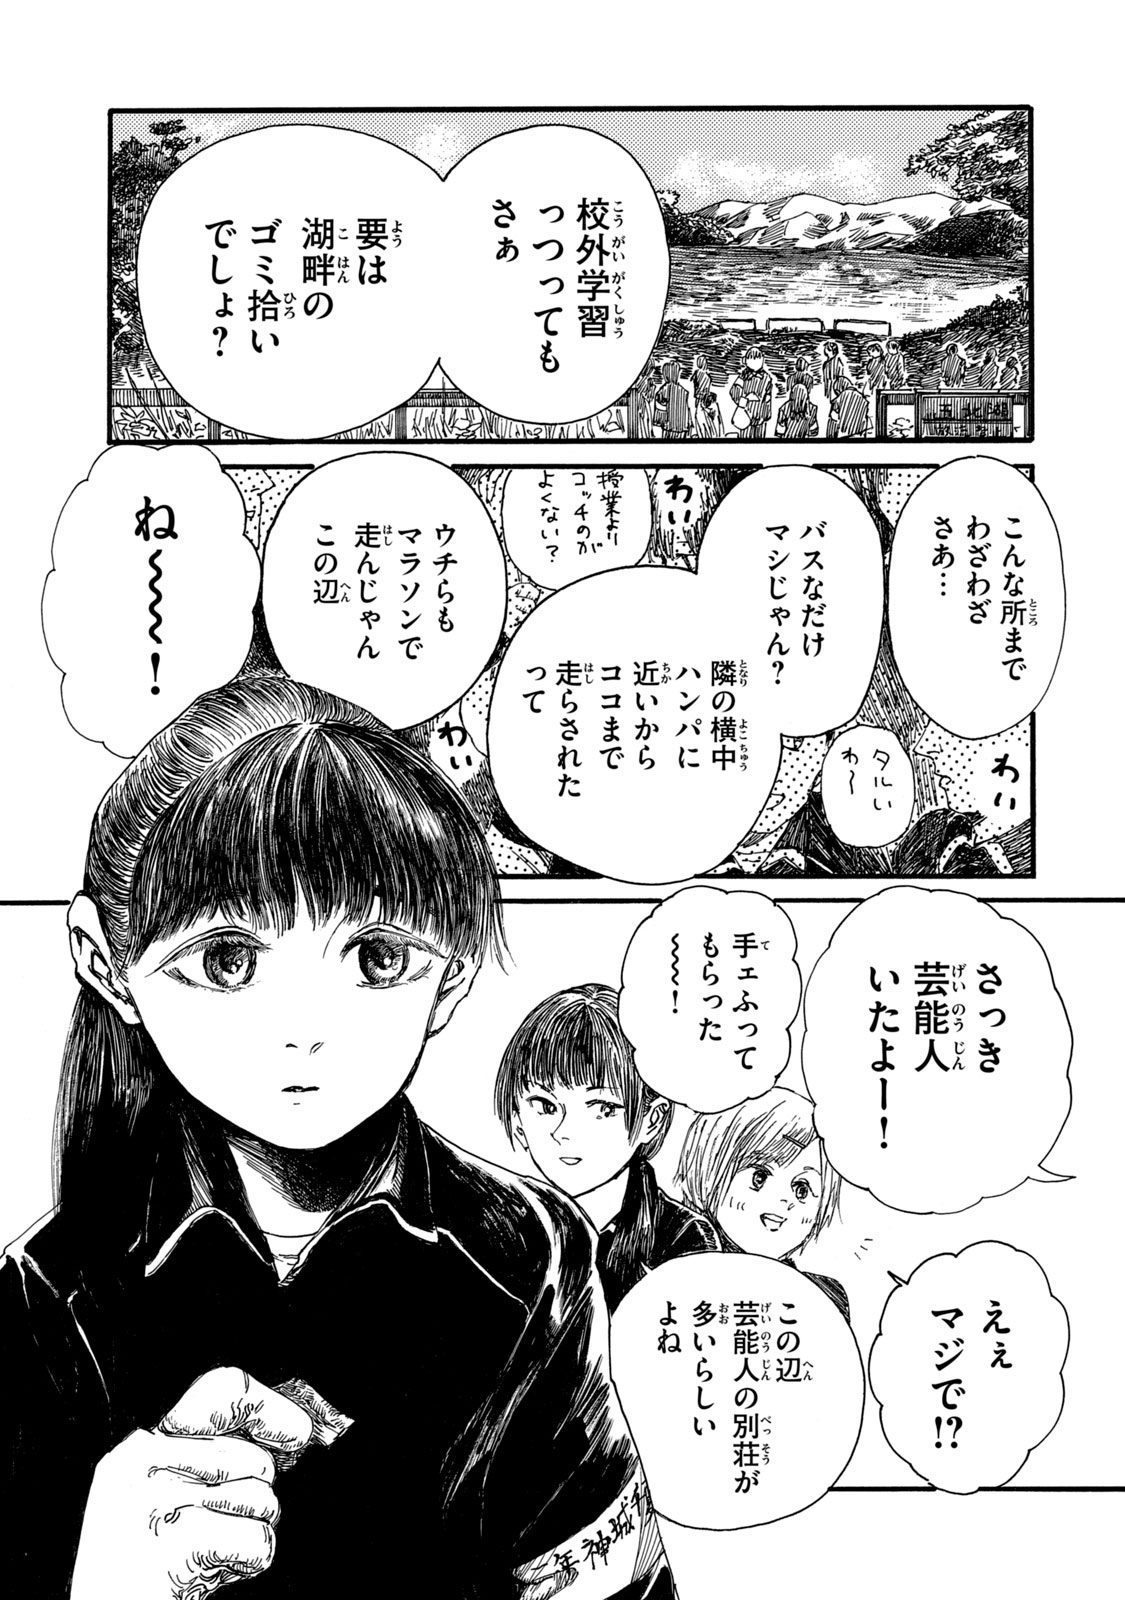 Watashi no Hara no Naka no Bakemono - Chapter 15 - Page 5